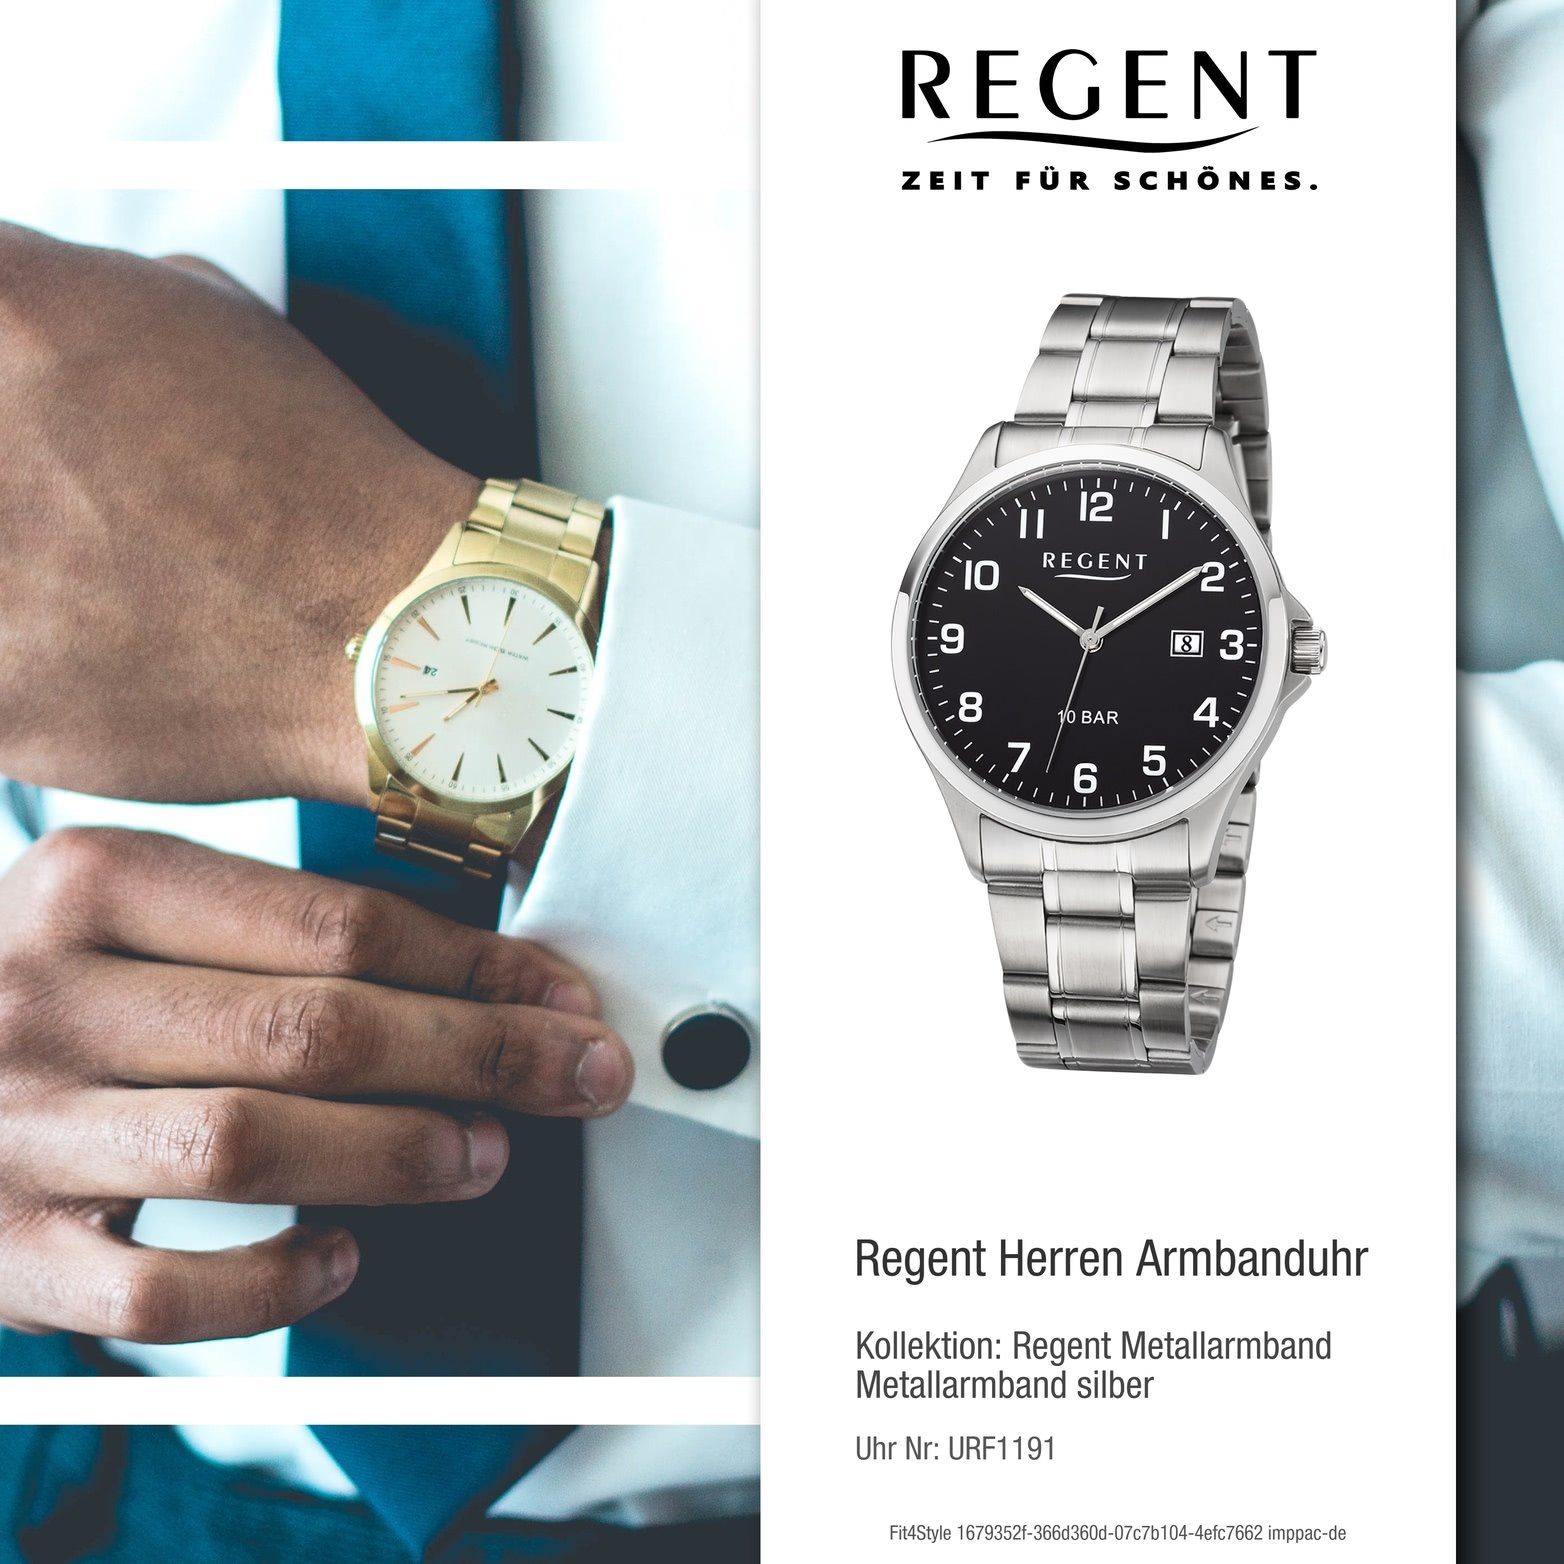 Regent rundes Quarzuhr Metall Herrenuhr mittel Regent (ca. Herren Gehäuse, Analog, F-1191 Metallarmband silber, Uhr 39mm)